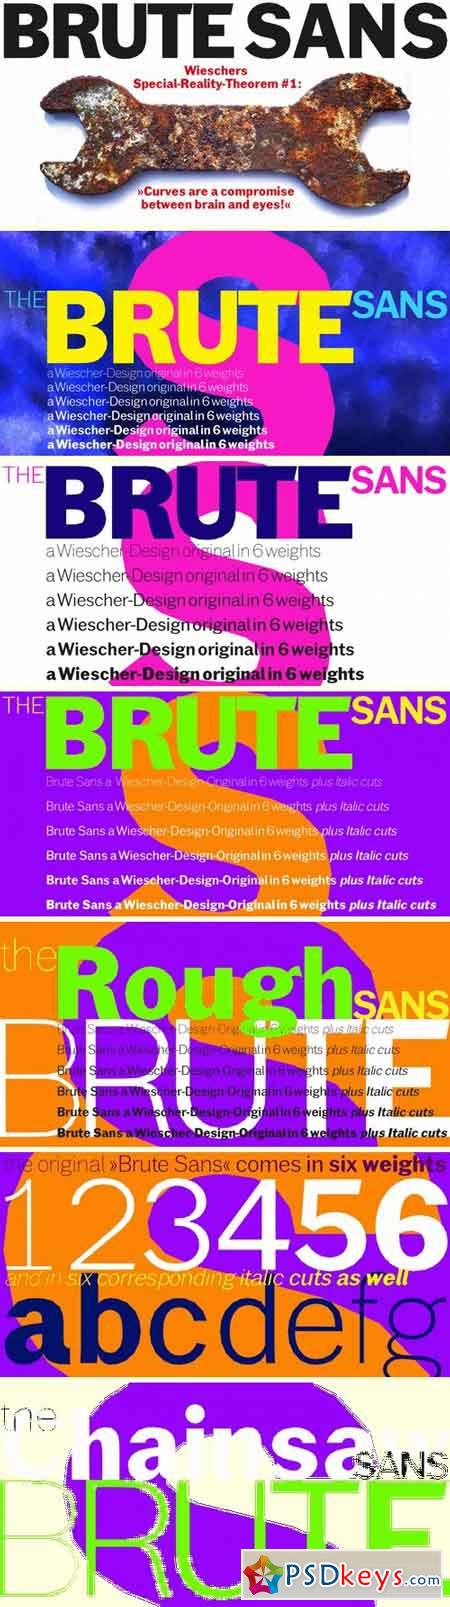 Brute Sans Font Family - 12 Fonts